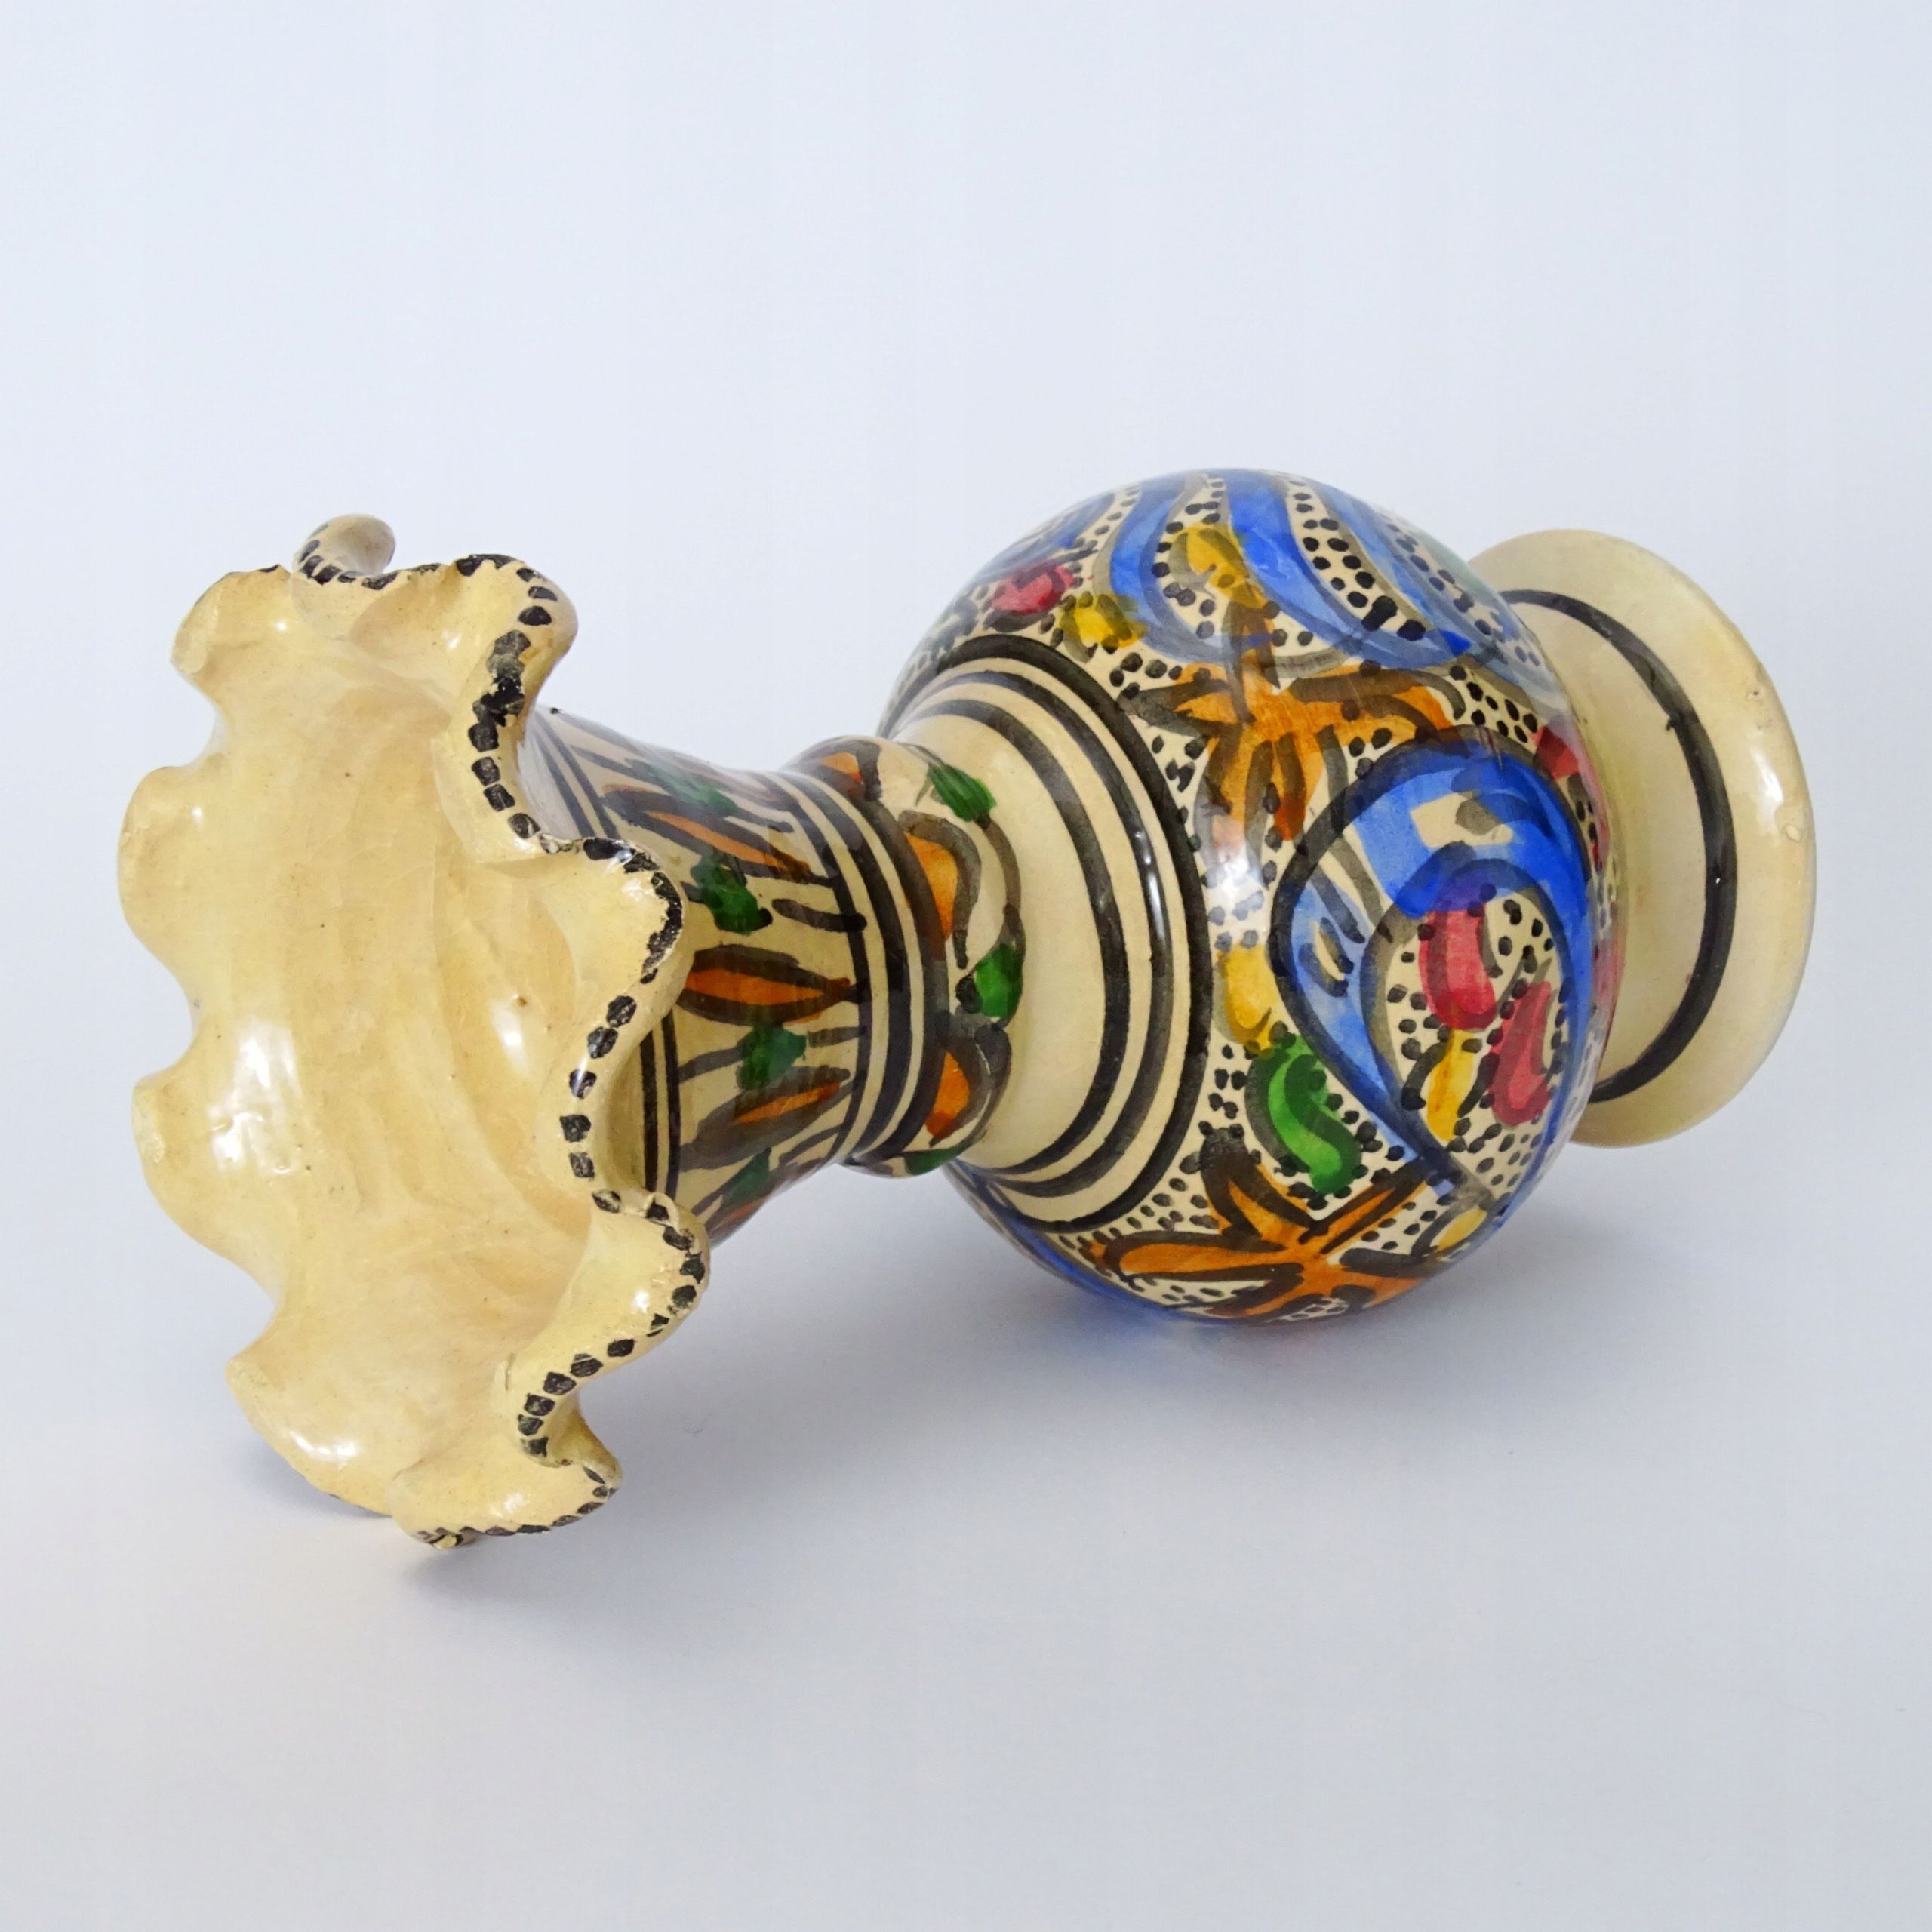 tunezja piękny malowany wazon ceramiczny